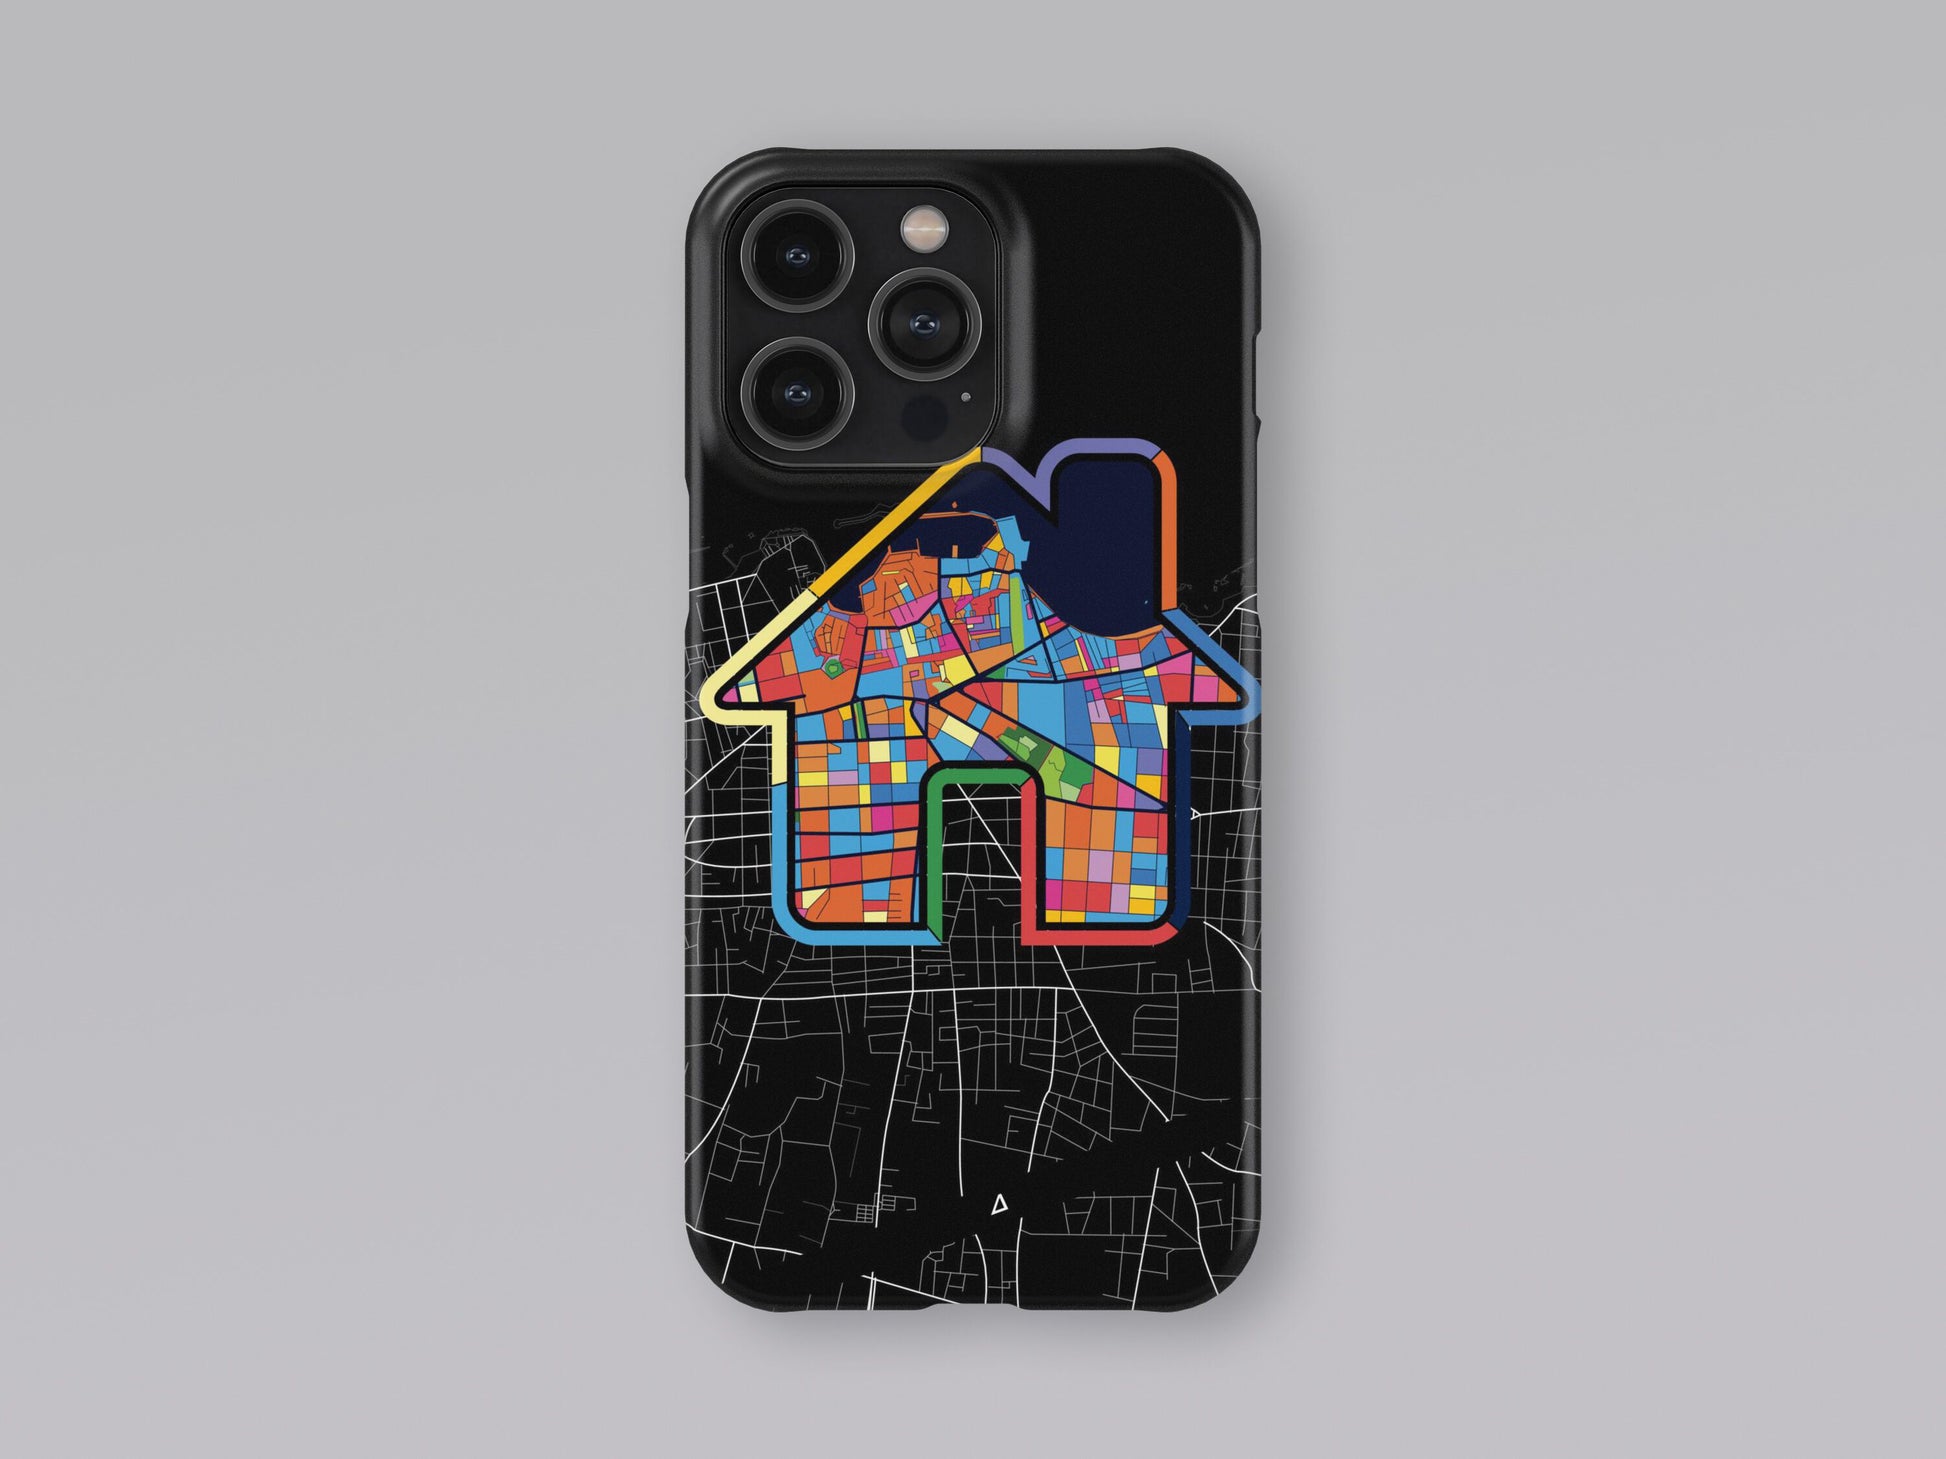 Χανια Ελλαδα slim phone case with colorful icon 3